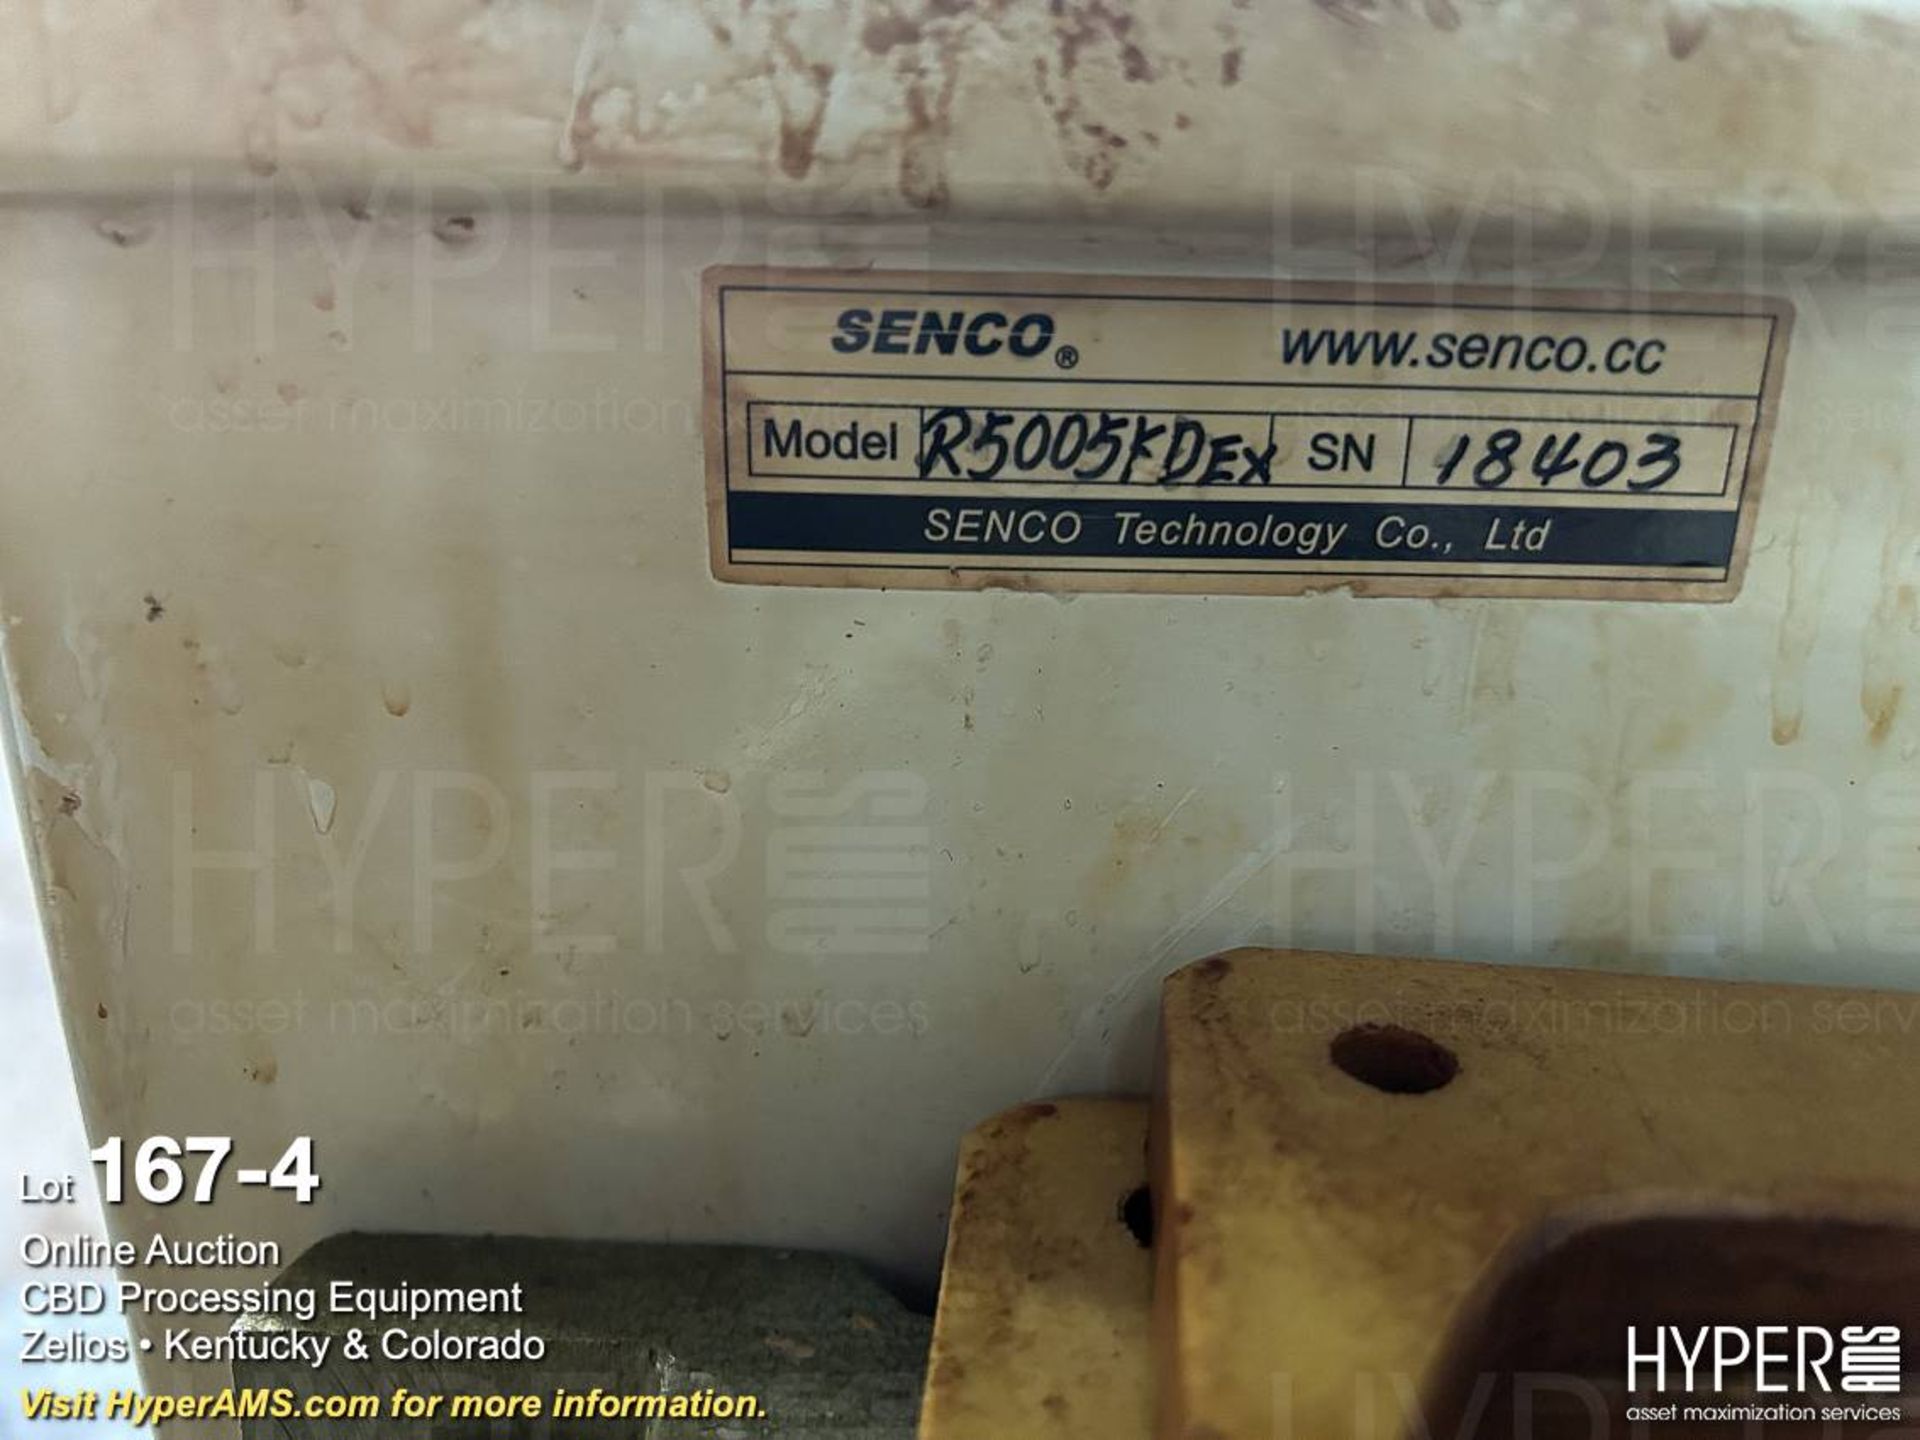 Senco Model R5005KD 50-Liter Rotary Evaporator, S/ - Image 4 of 7